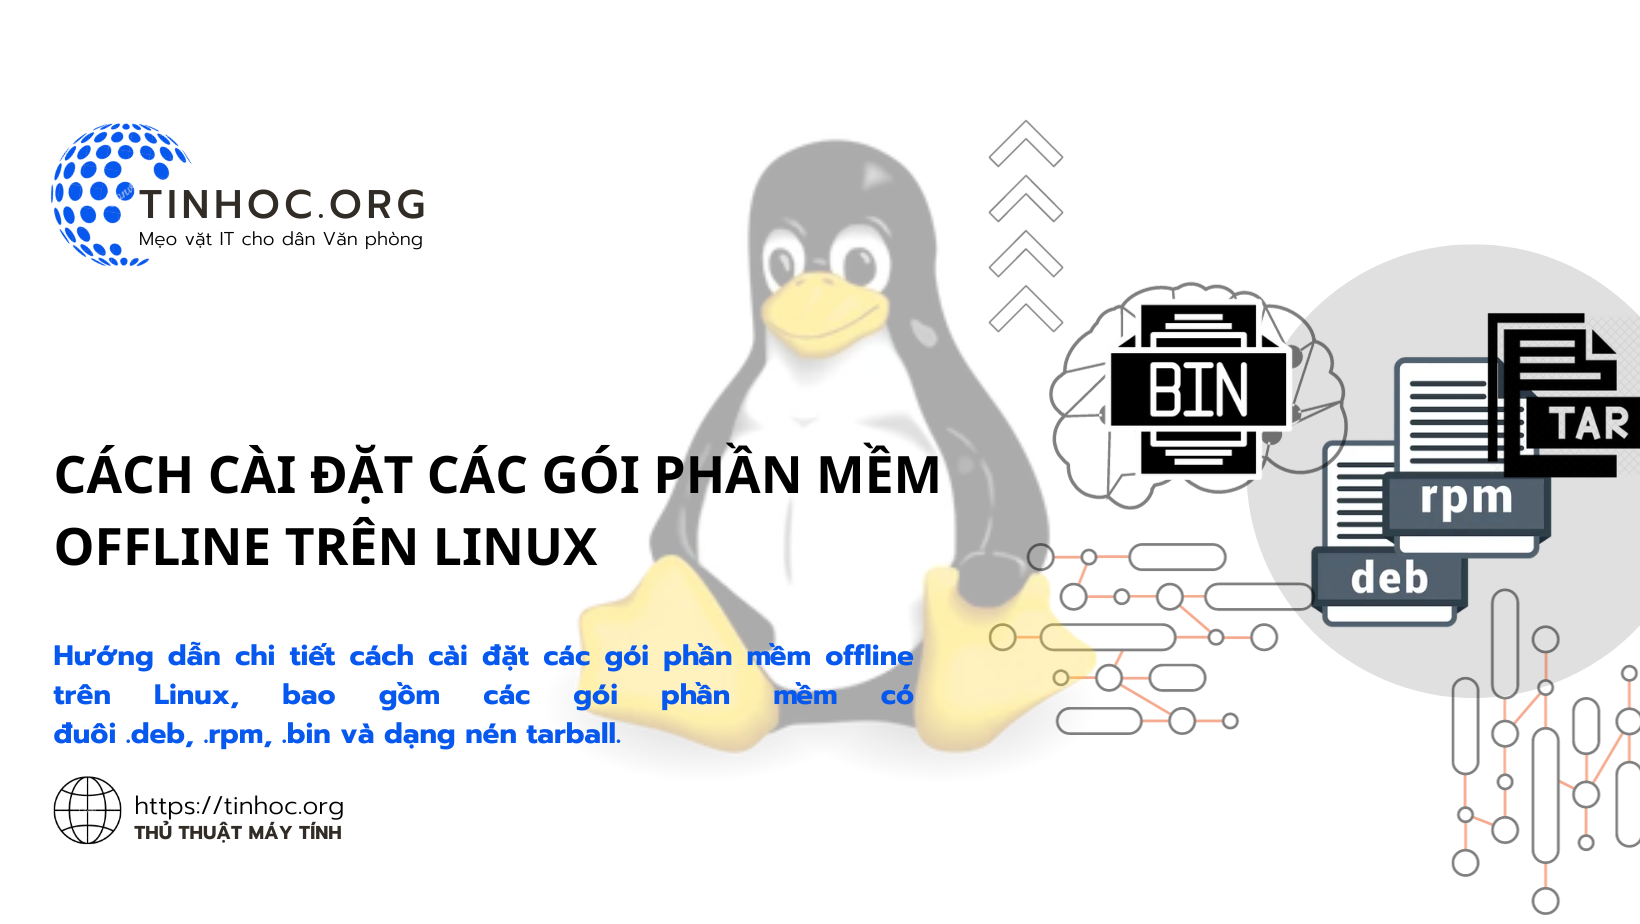 Cách cài đặt các gói phần mềm offline trên Linux